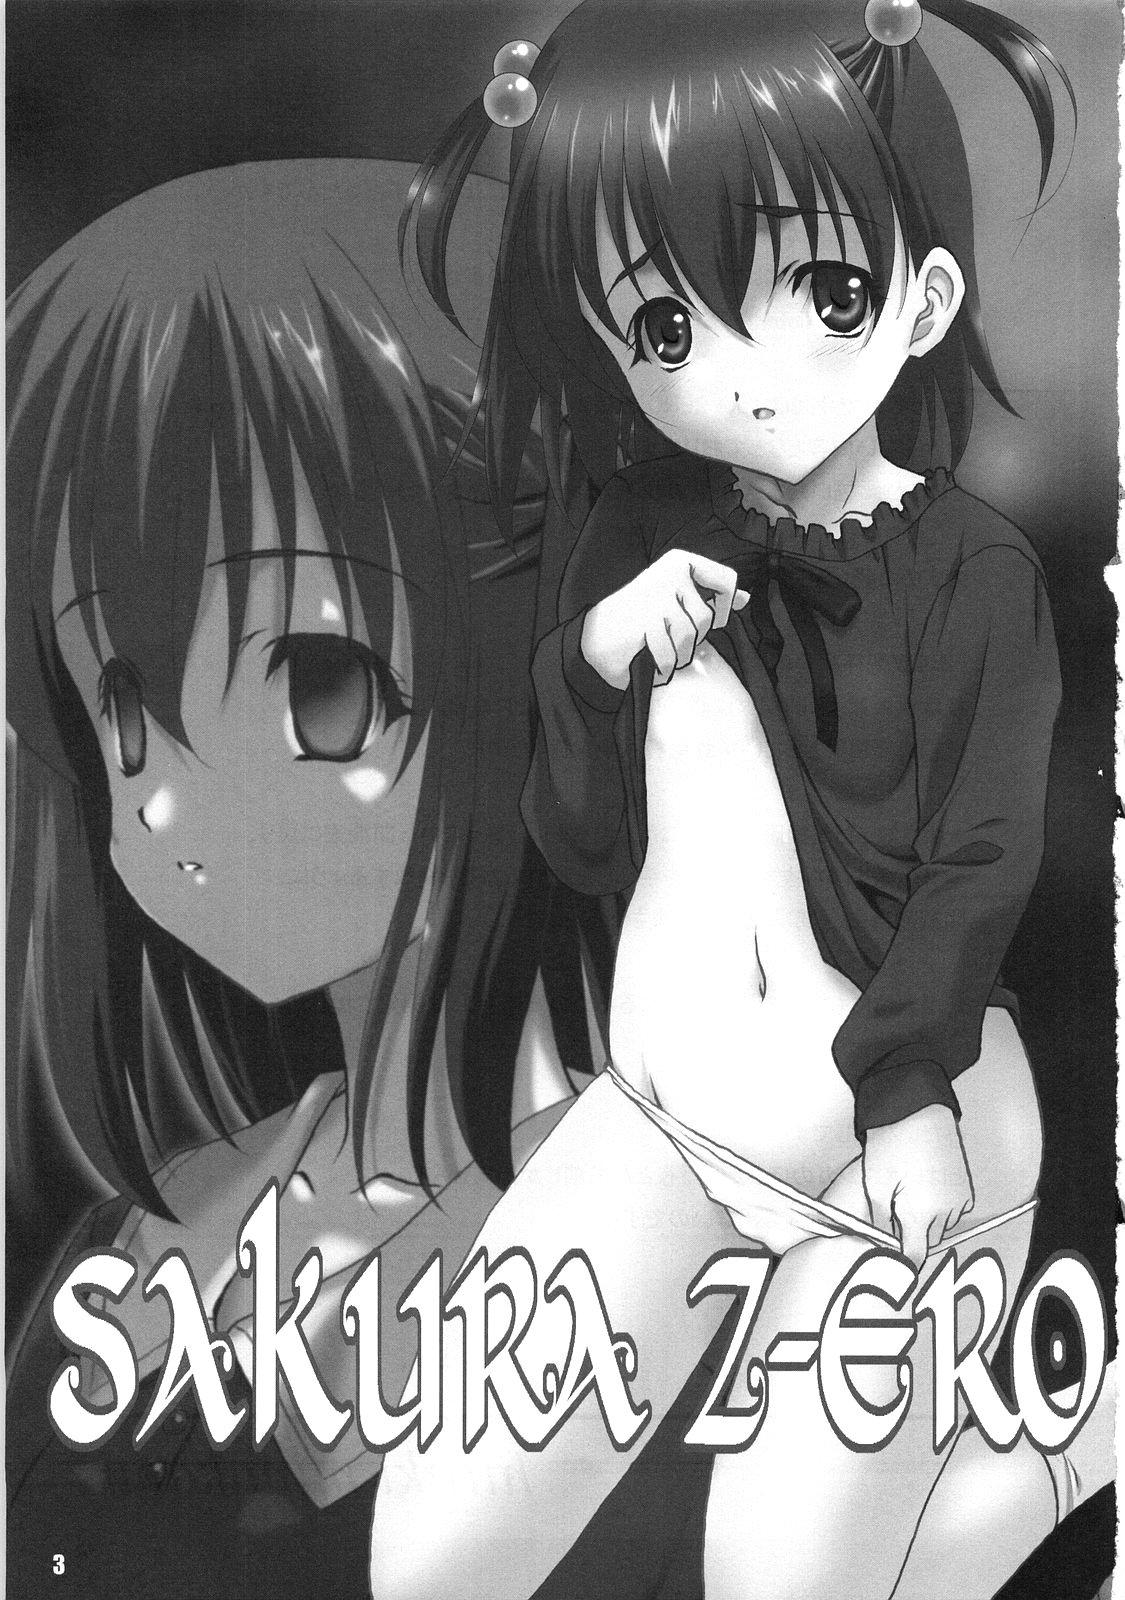 Pov Sex SAKURA Z-ERO EXtra stage vol. 22 - Fate stay night Fate zero Amateur - Page 2